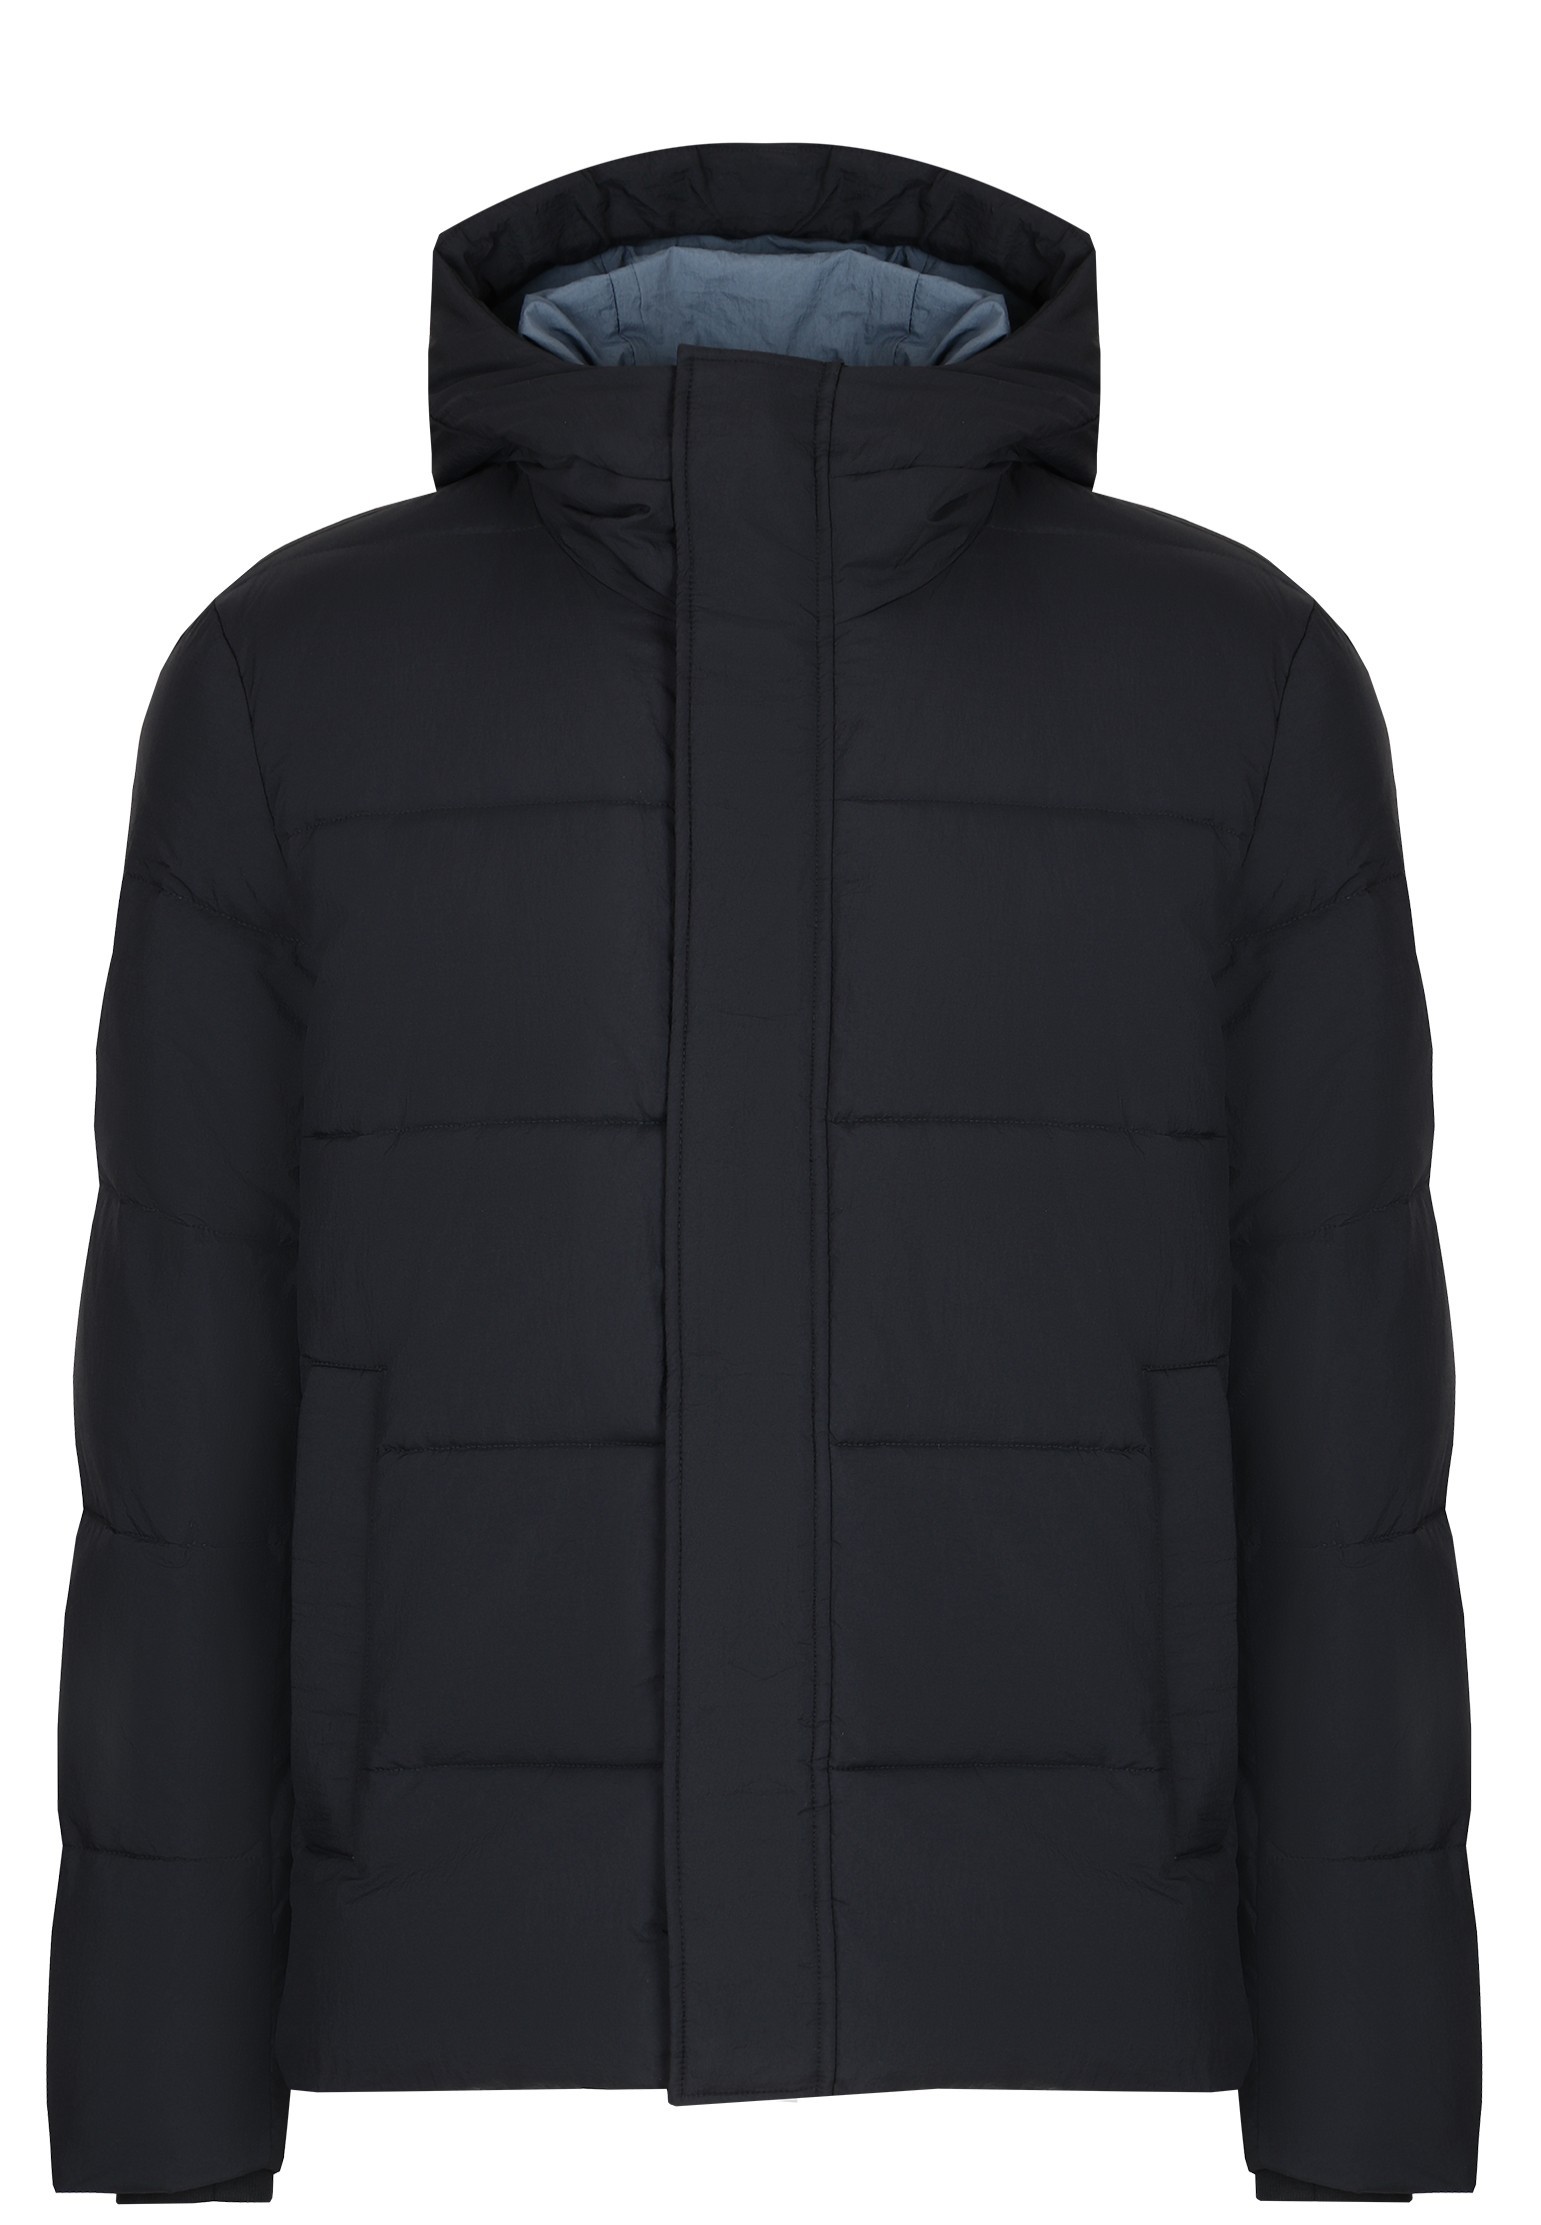 Зимняя куртка мужская Strellson 137049 синяя 56 EU